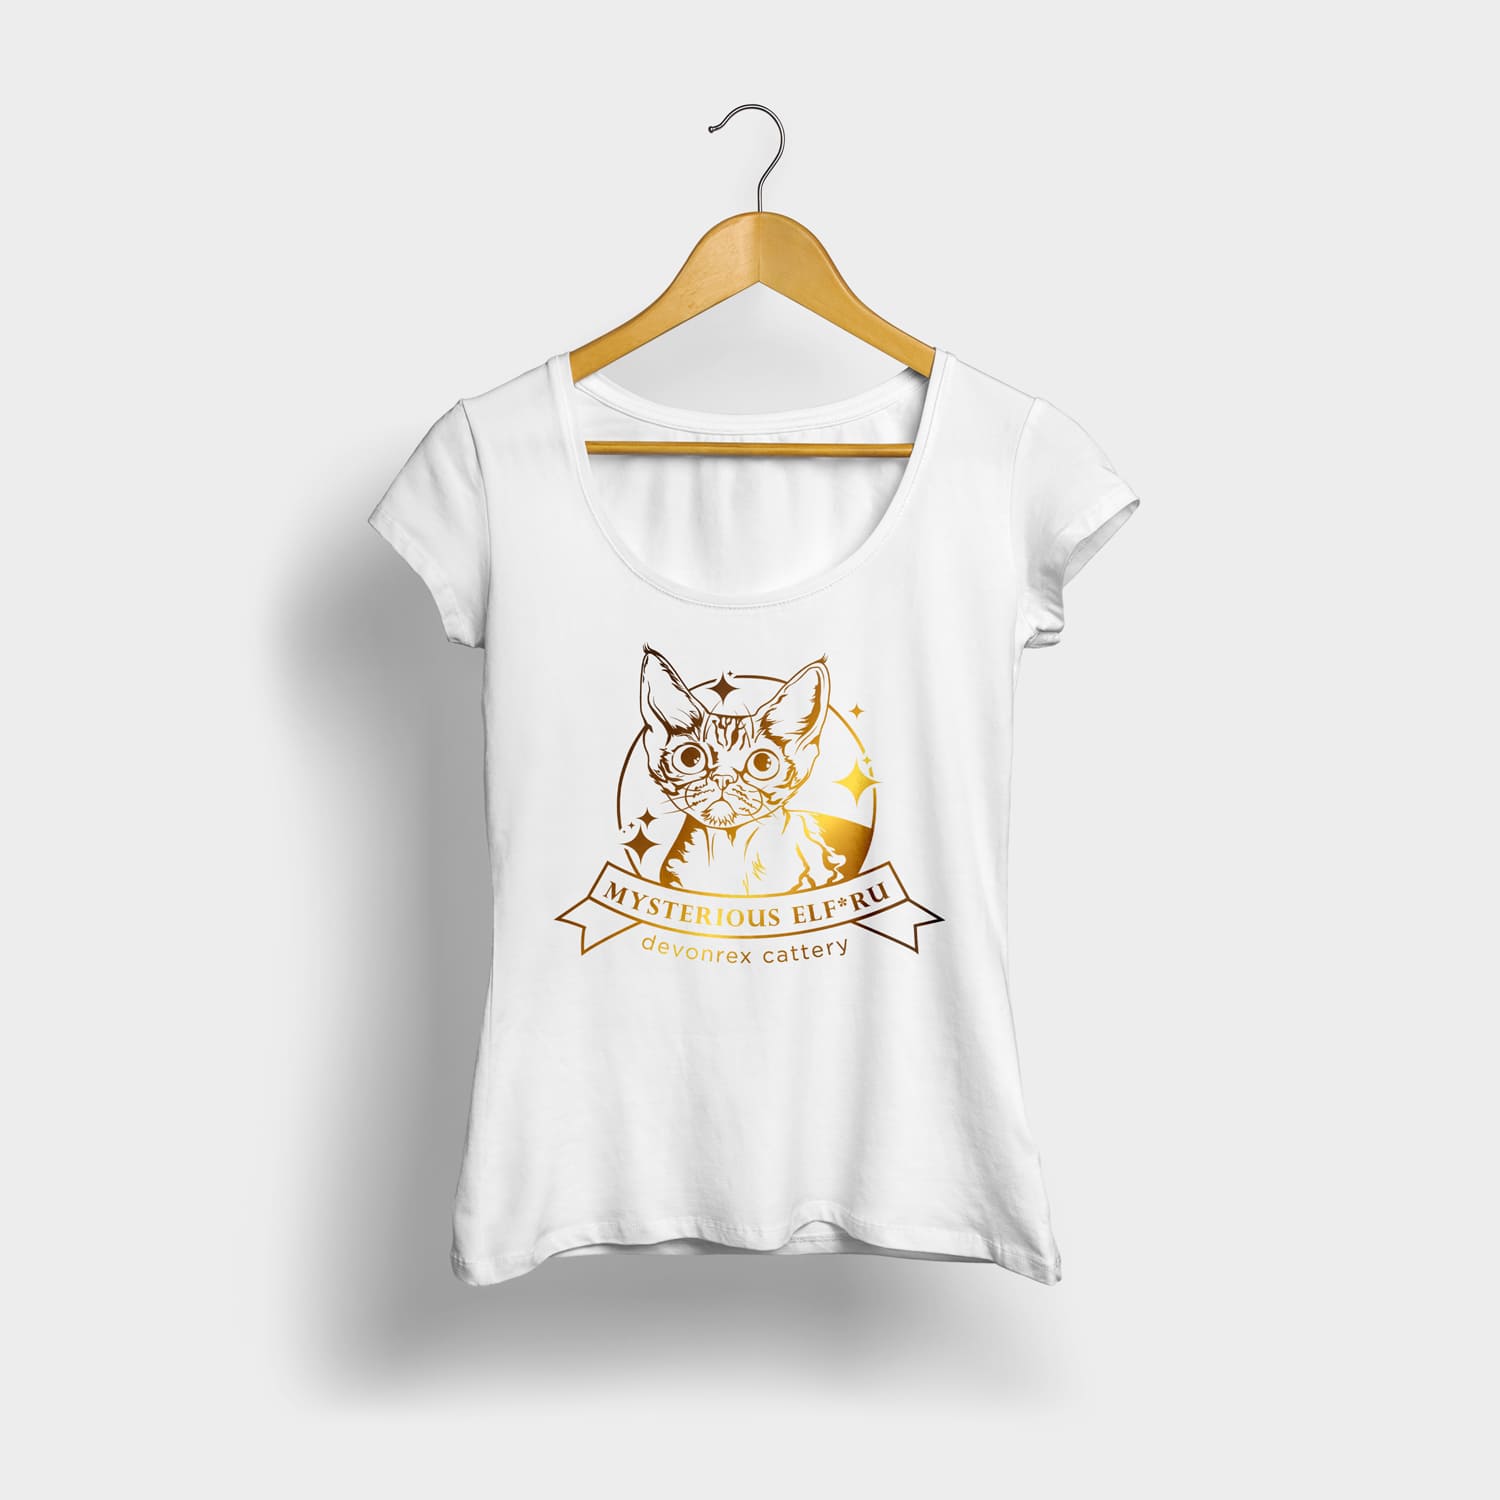 логотип питомника кошек на футболке